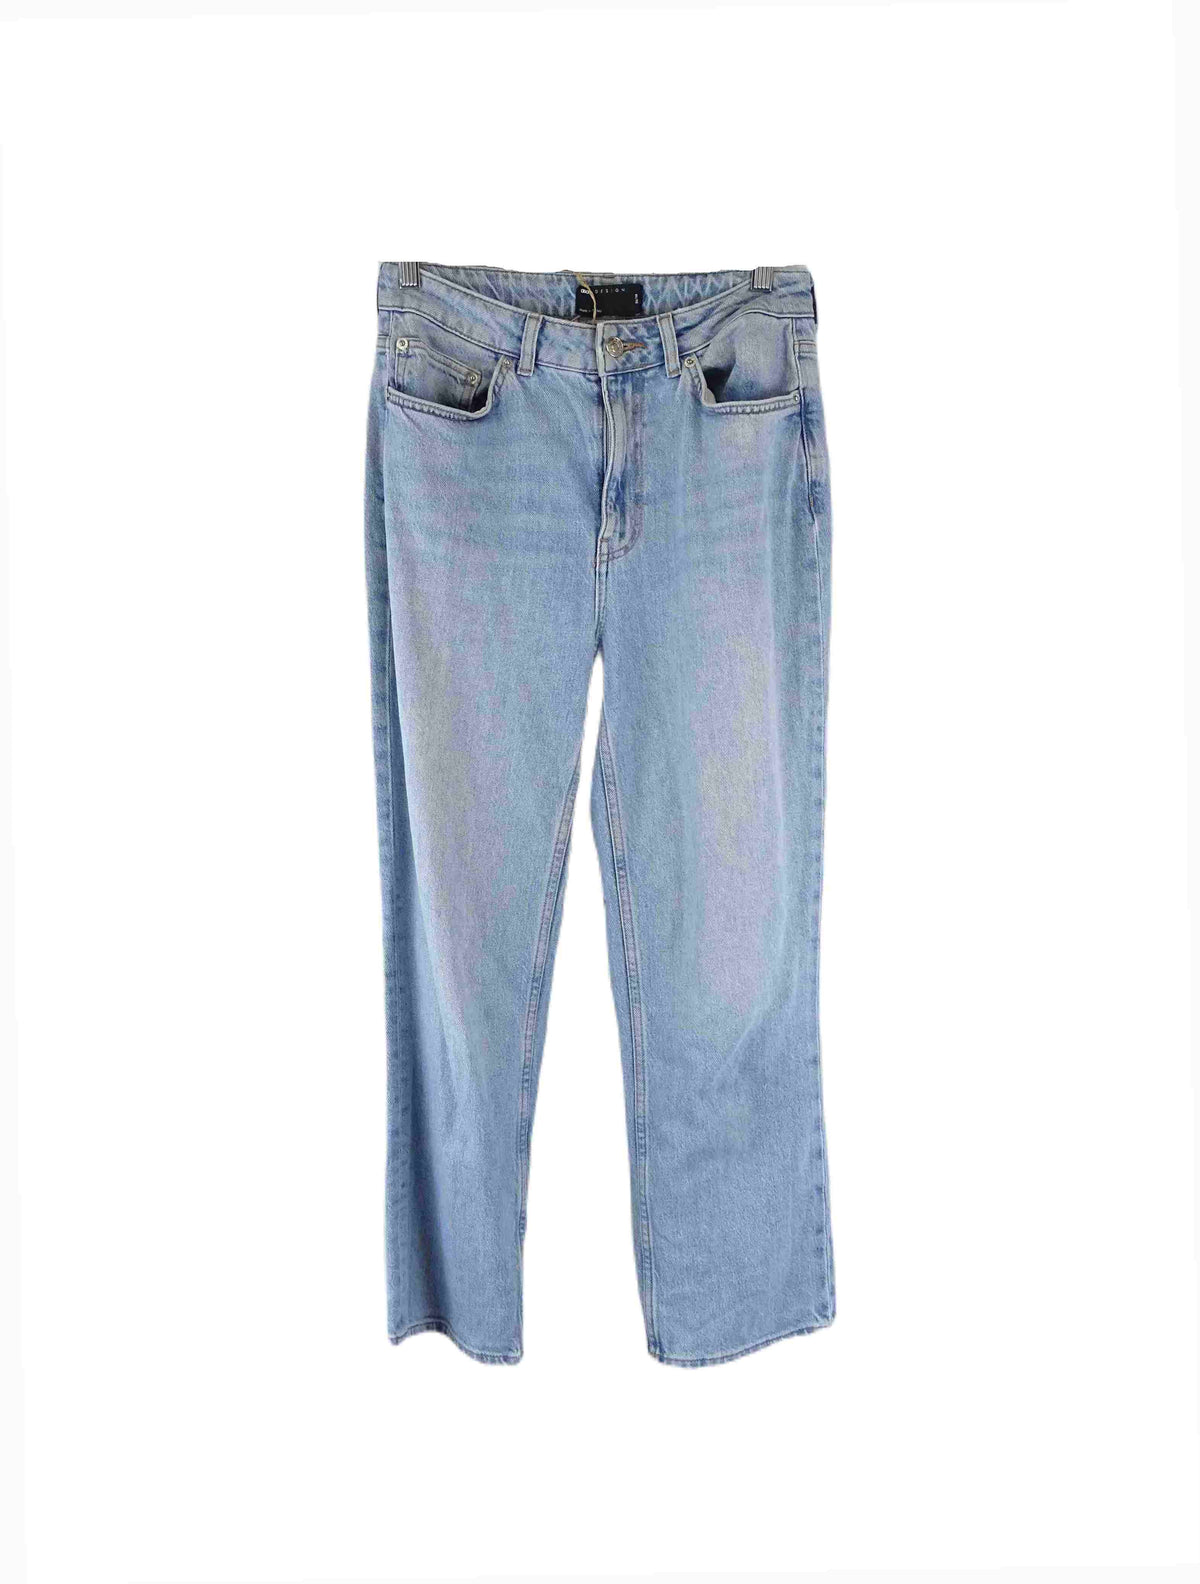 Asos Blue Jeans 8